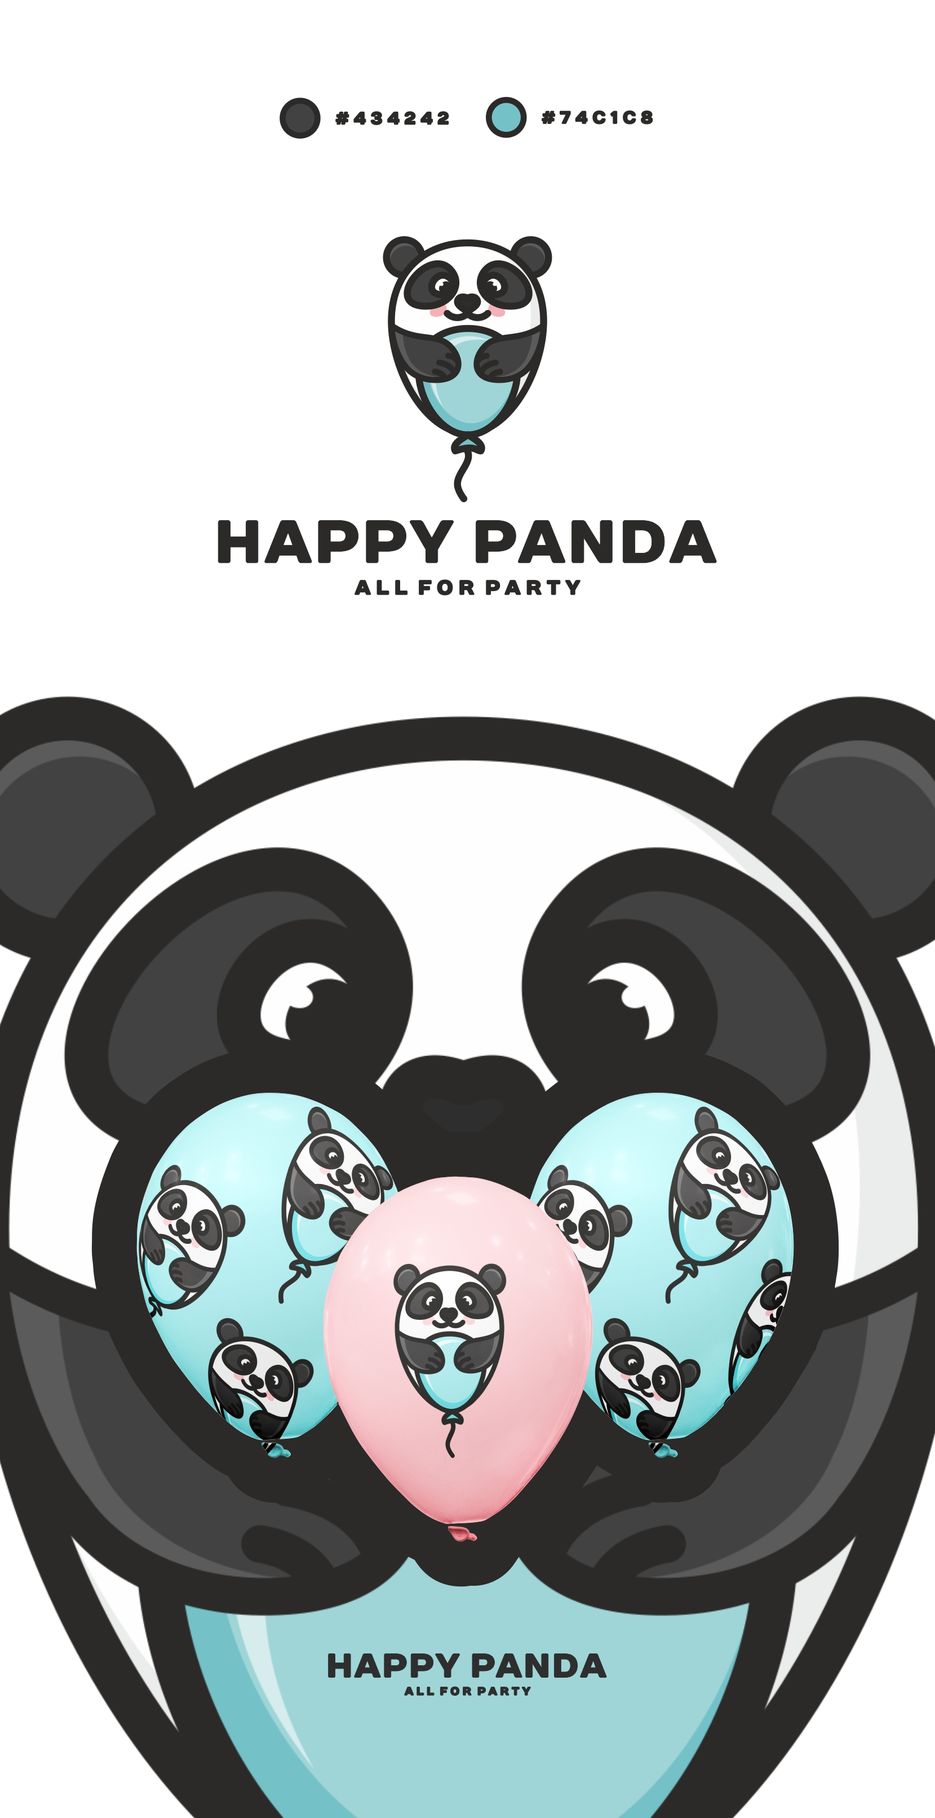 HAPPY PANDA. 